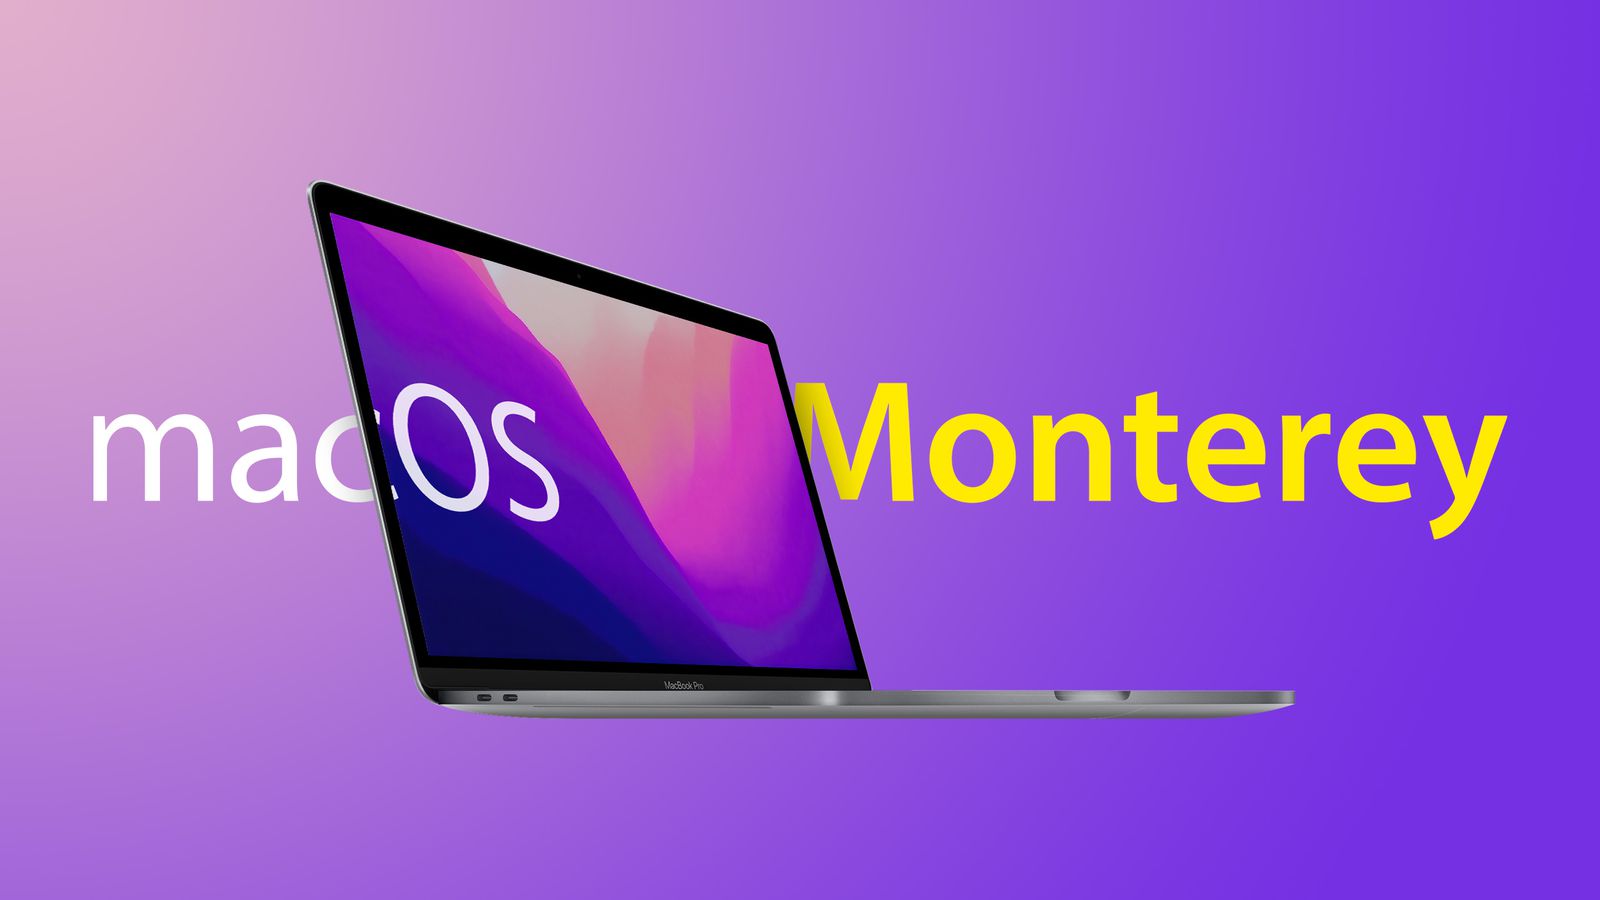 To już oficjalne: stabilna wersja macOS Monterey zostanie wydana 25 października